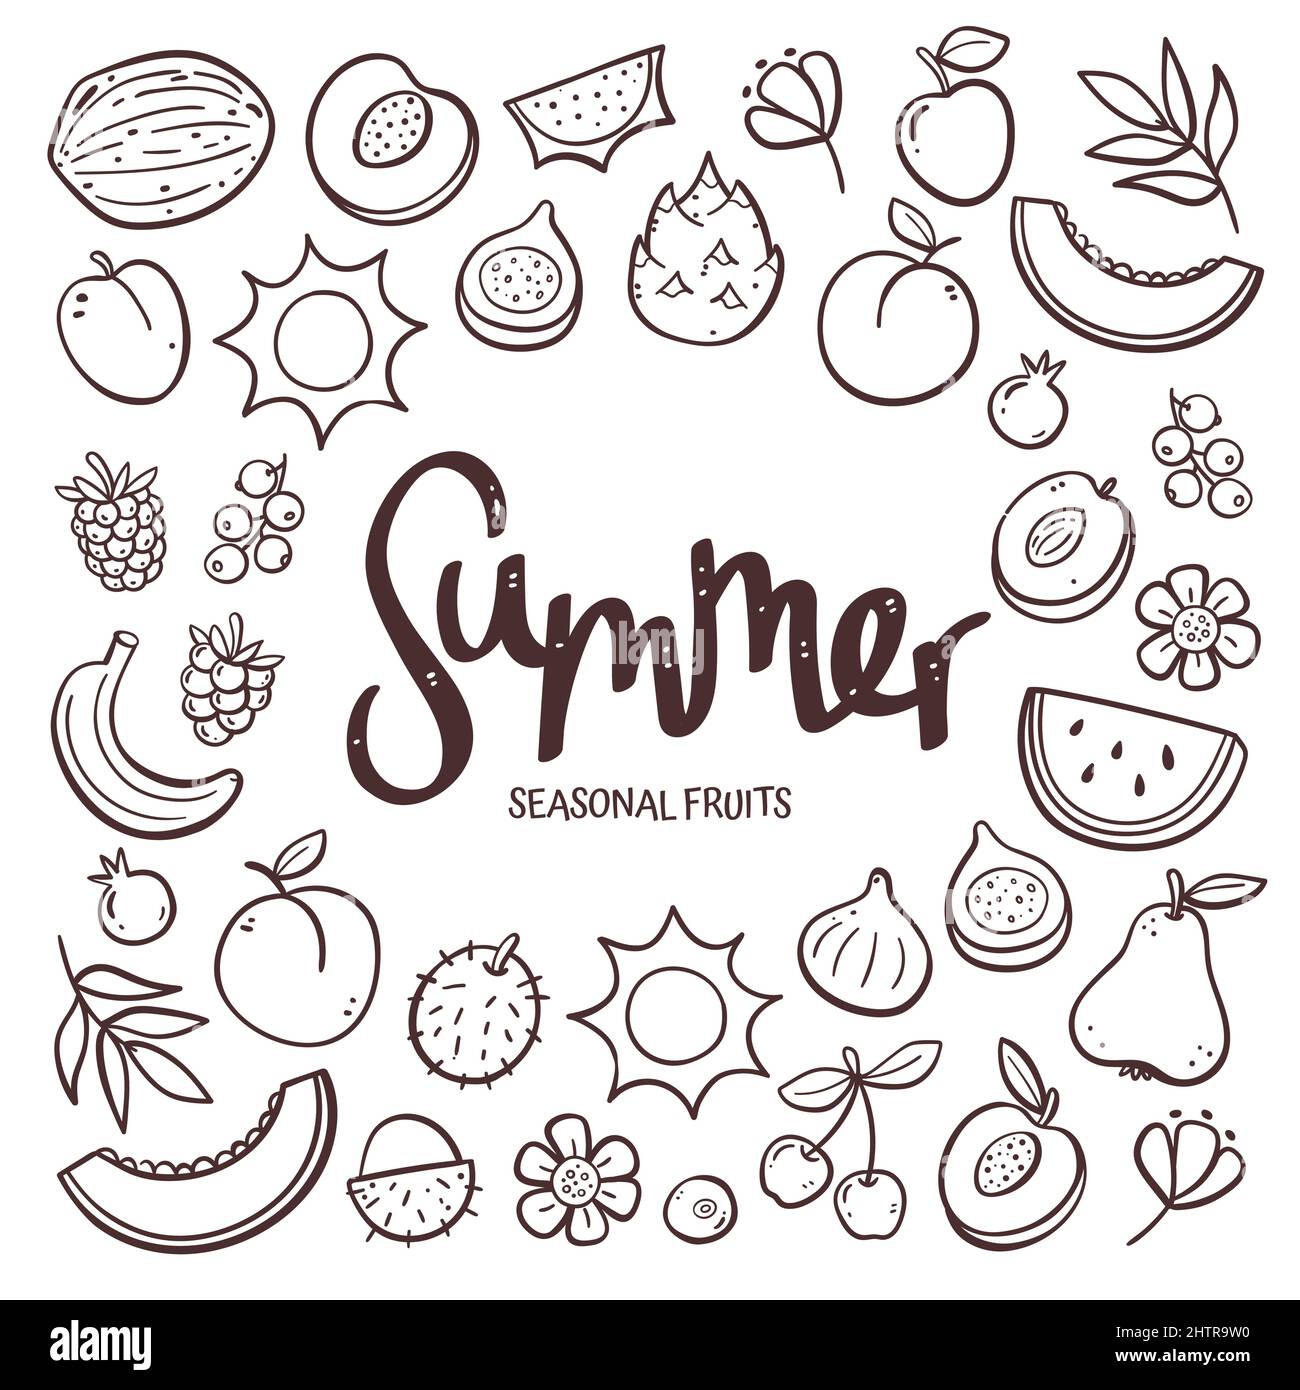 Saisonale Früchte Hintergrund. Handgezeichnete Sommerfrucht-Komposition aus Doodle-Vektor-Icons, isoliert auf weißem Hintergrund. Stock Vektor